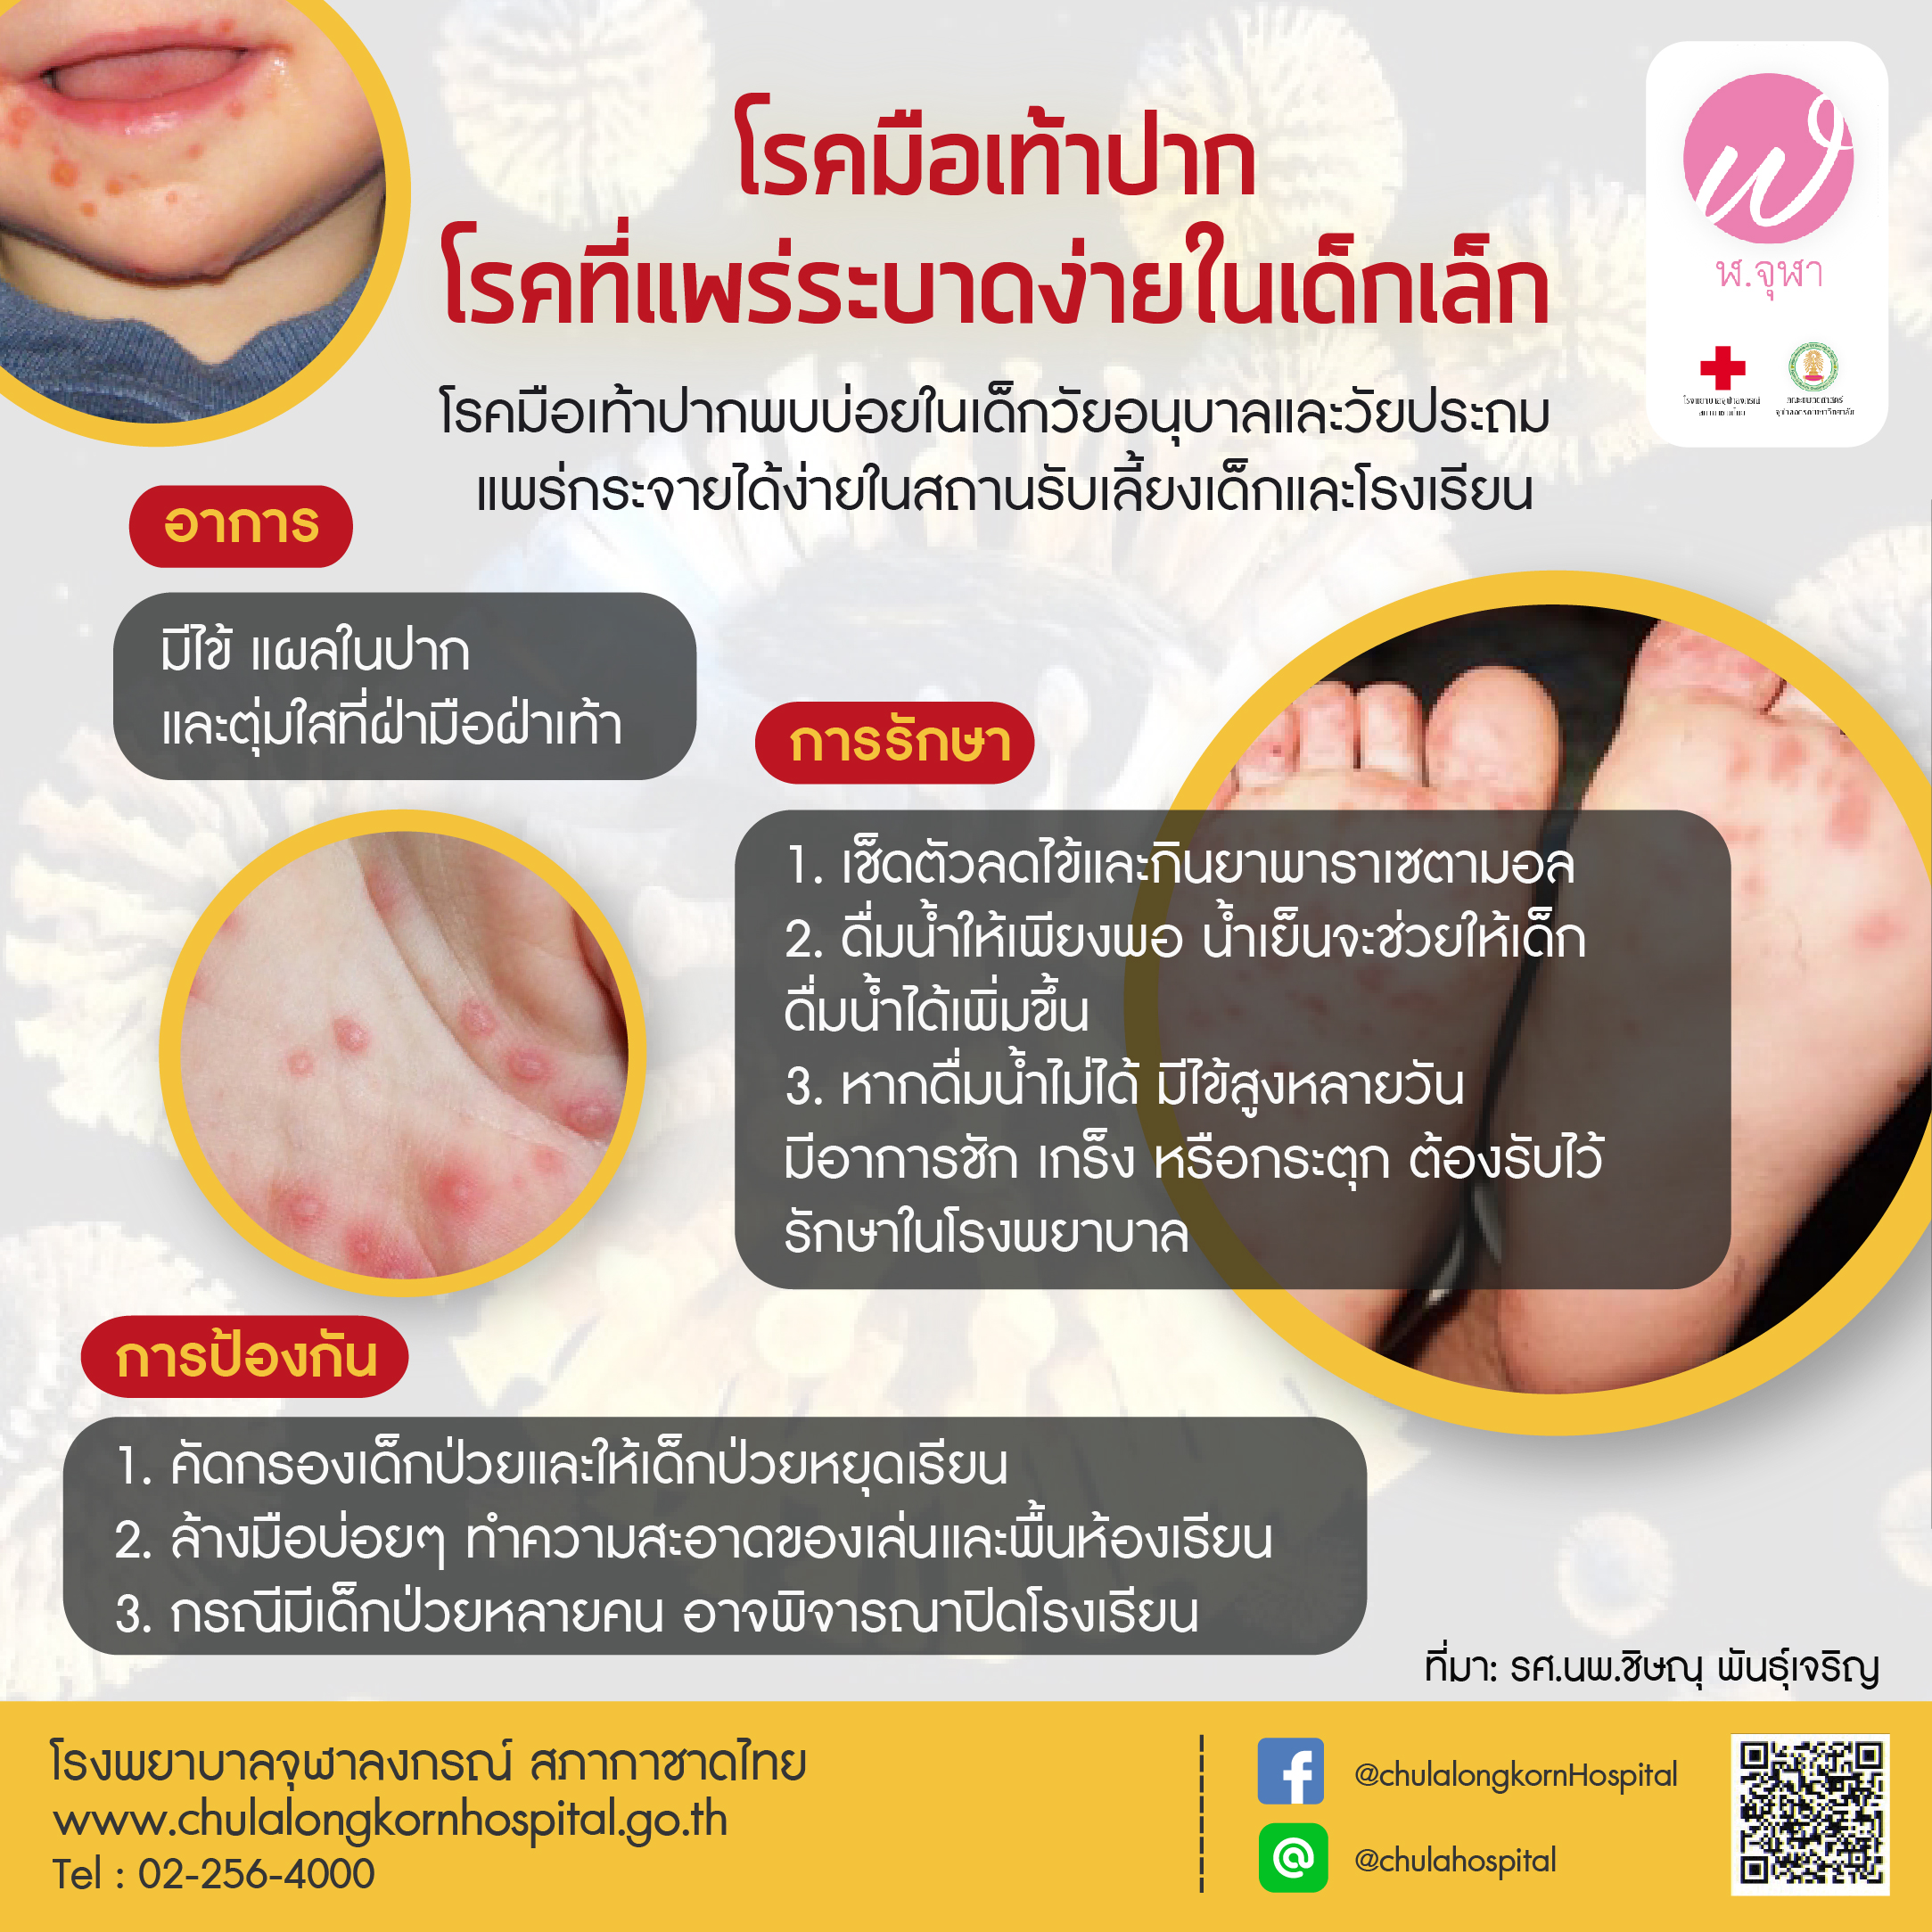 โรคมือเท้าปาก โรคที่แพร่ระบาดง่ายในเด็กเล็ก